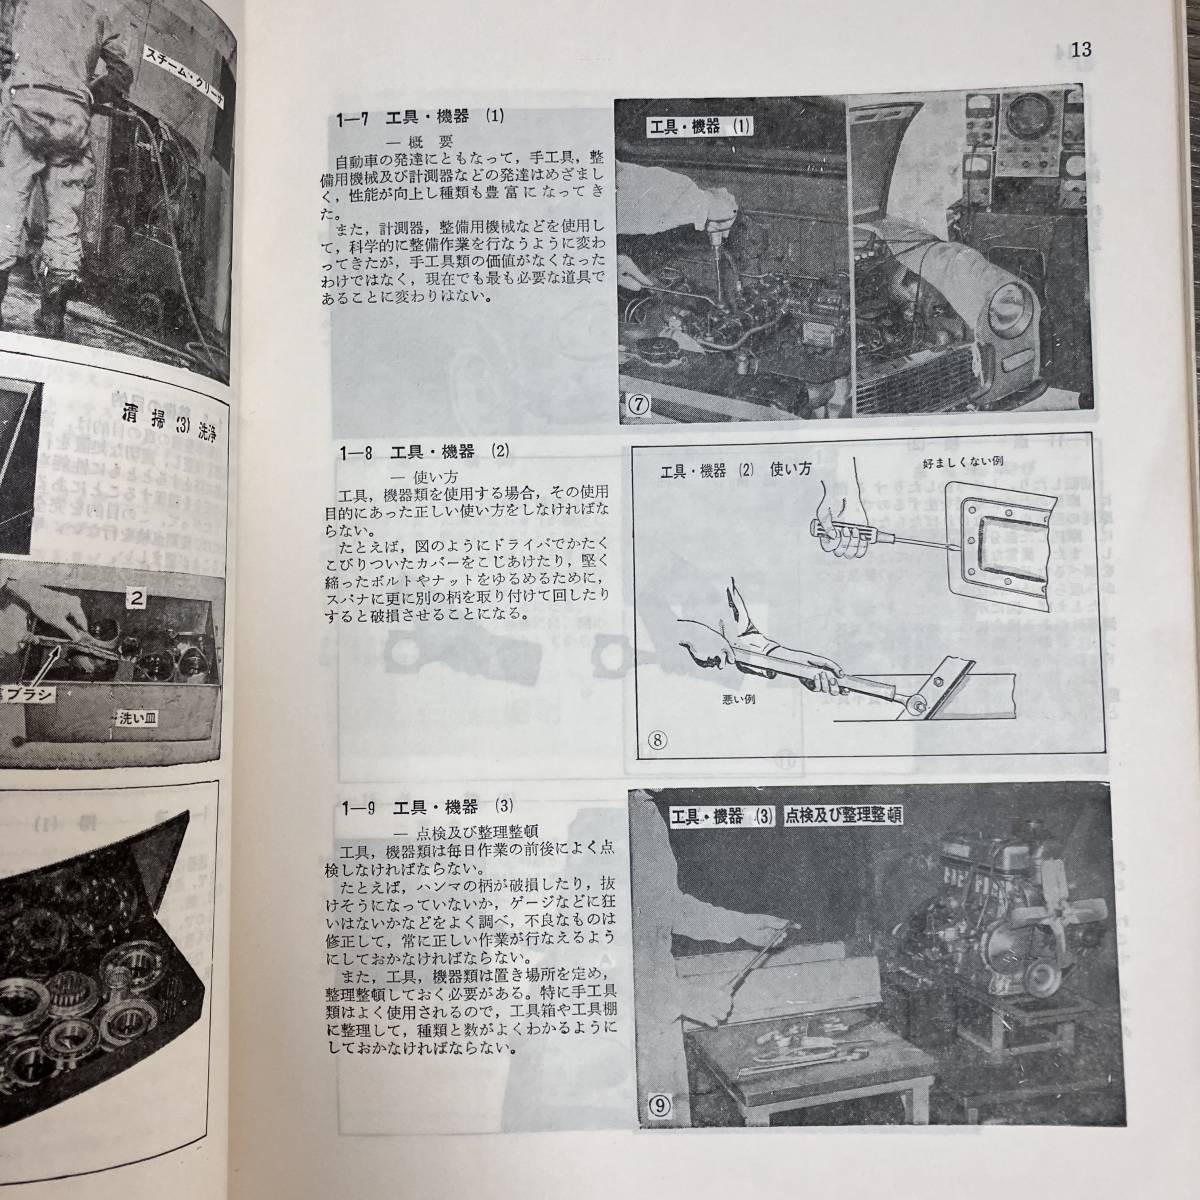 K-938■基礎自動車整備作業■日本自動車整備振興会連合会■昭和52年4月20日 再版_画像8